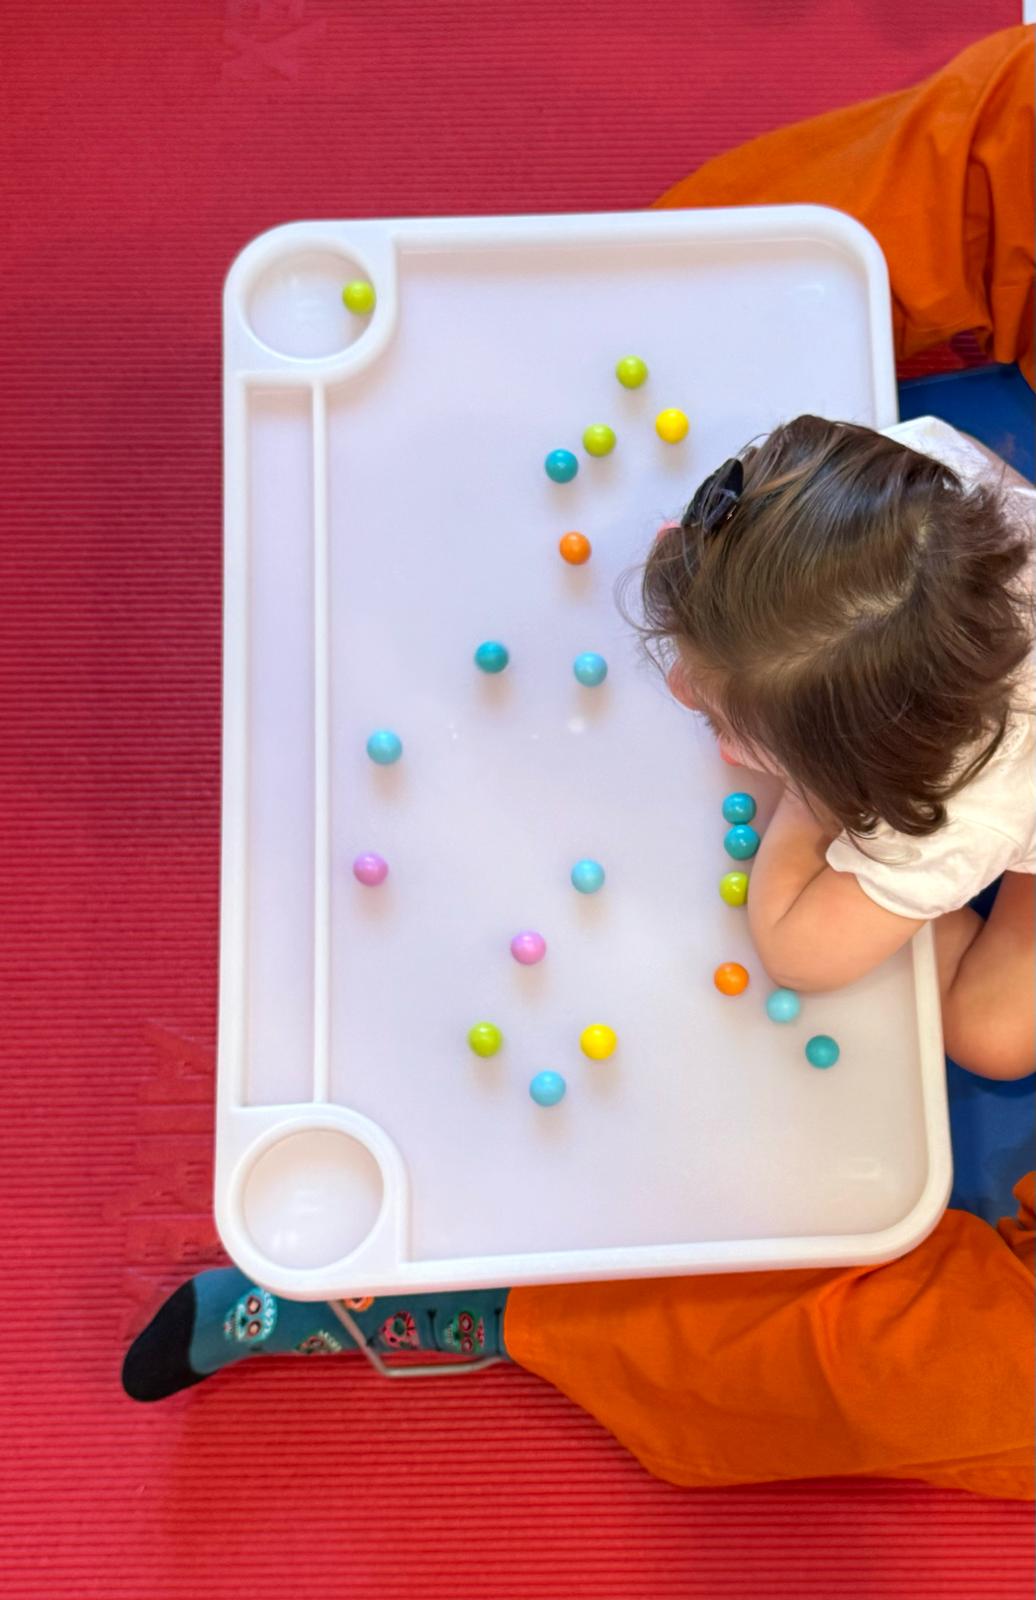 Niño concentrado en recoger bolas de colores de una bandeja blanca sobre una colchoneta roja.